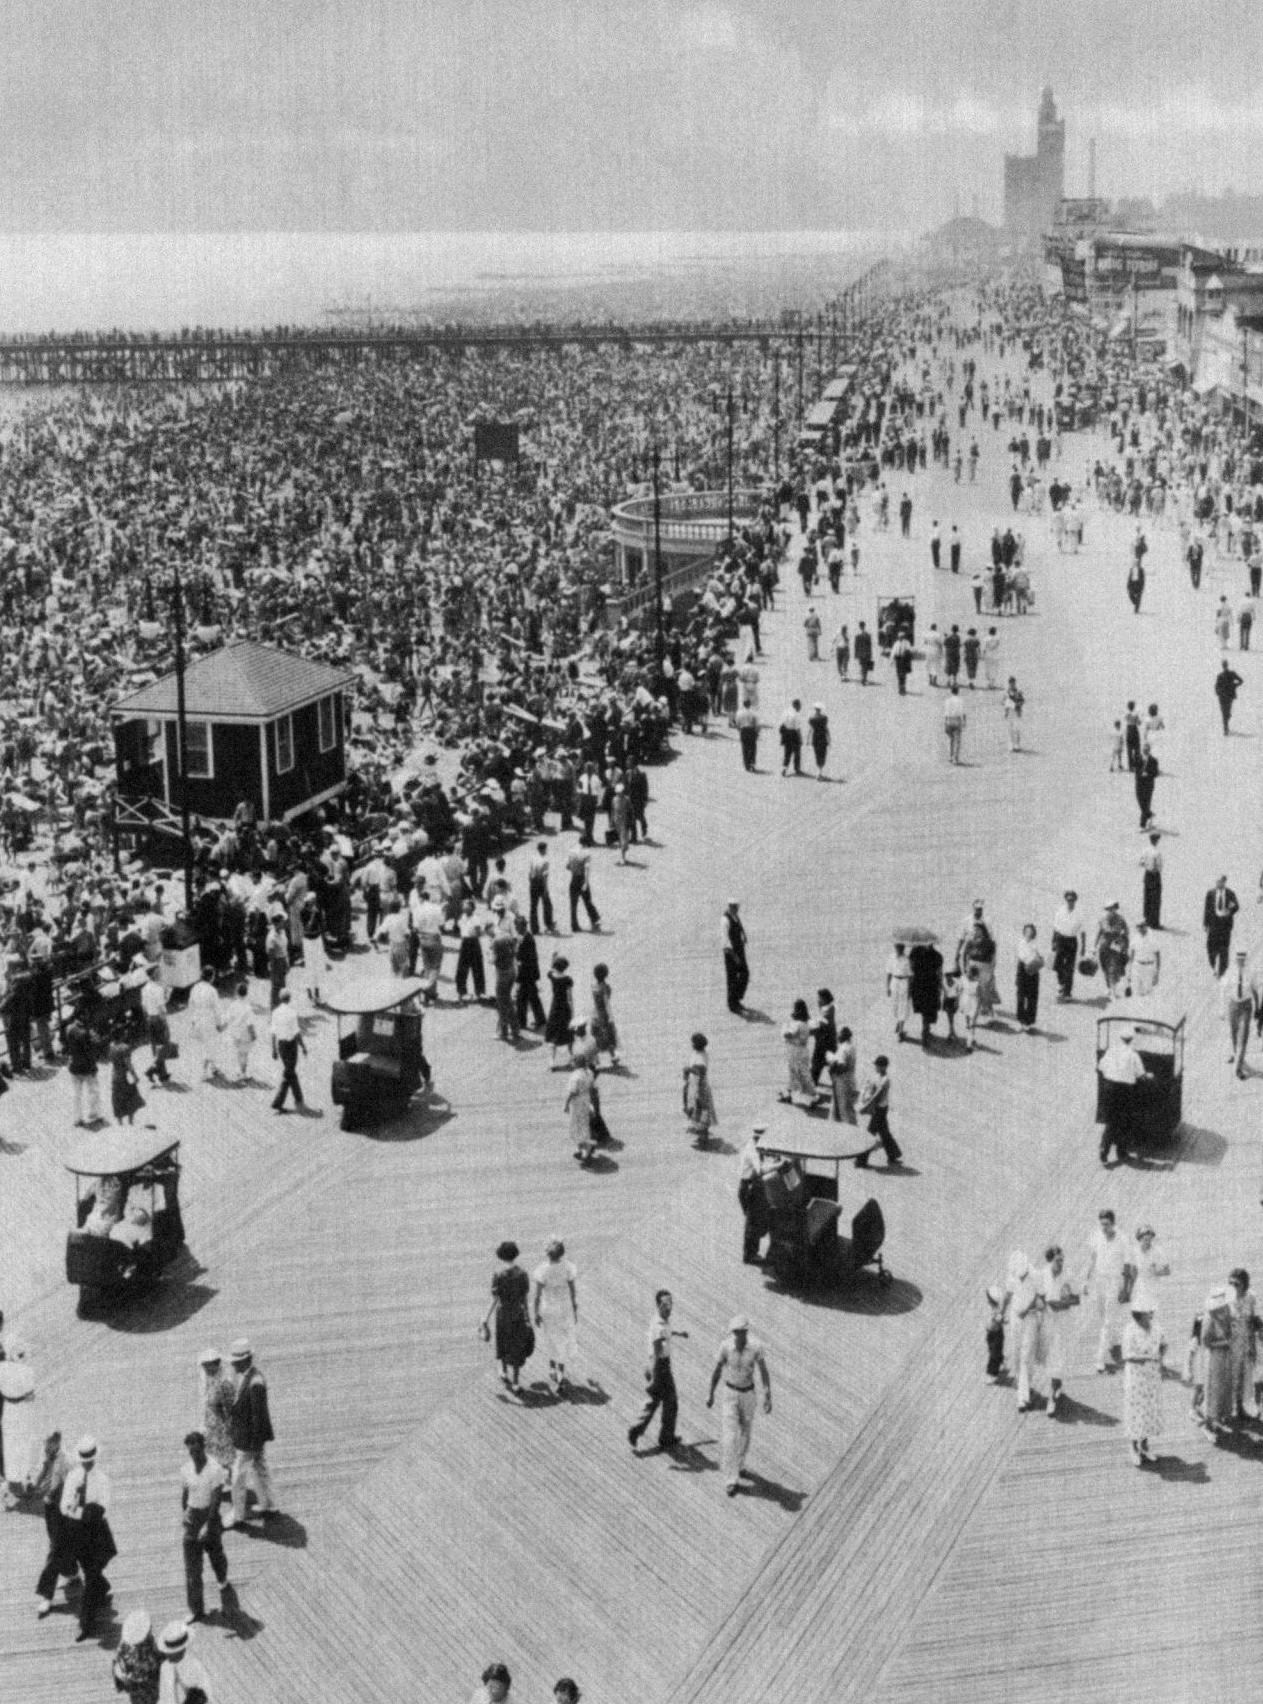 Coney Island Boardwalk Crowds, Circa 1900